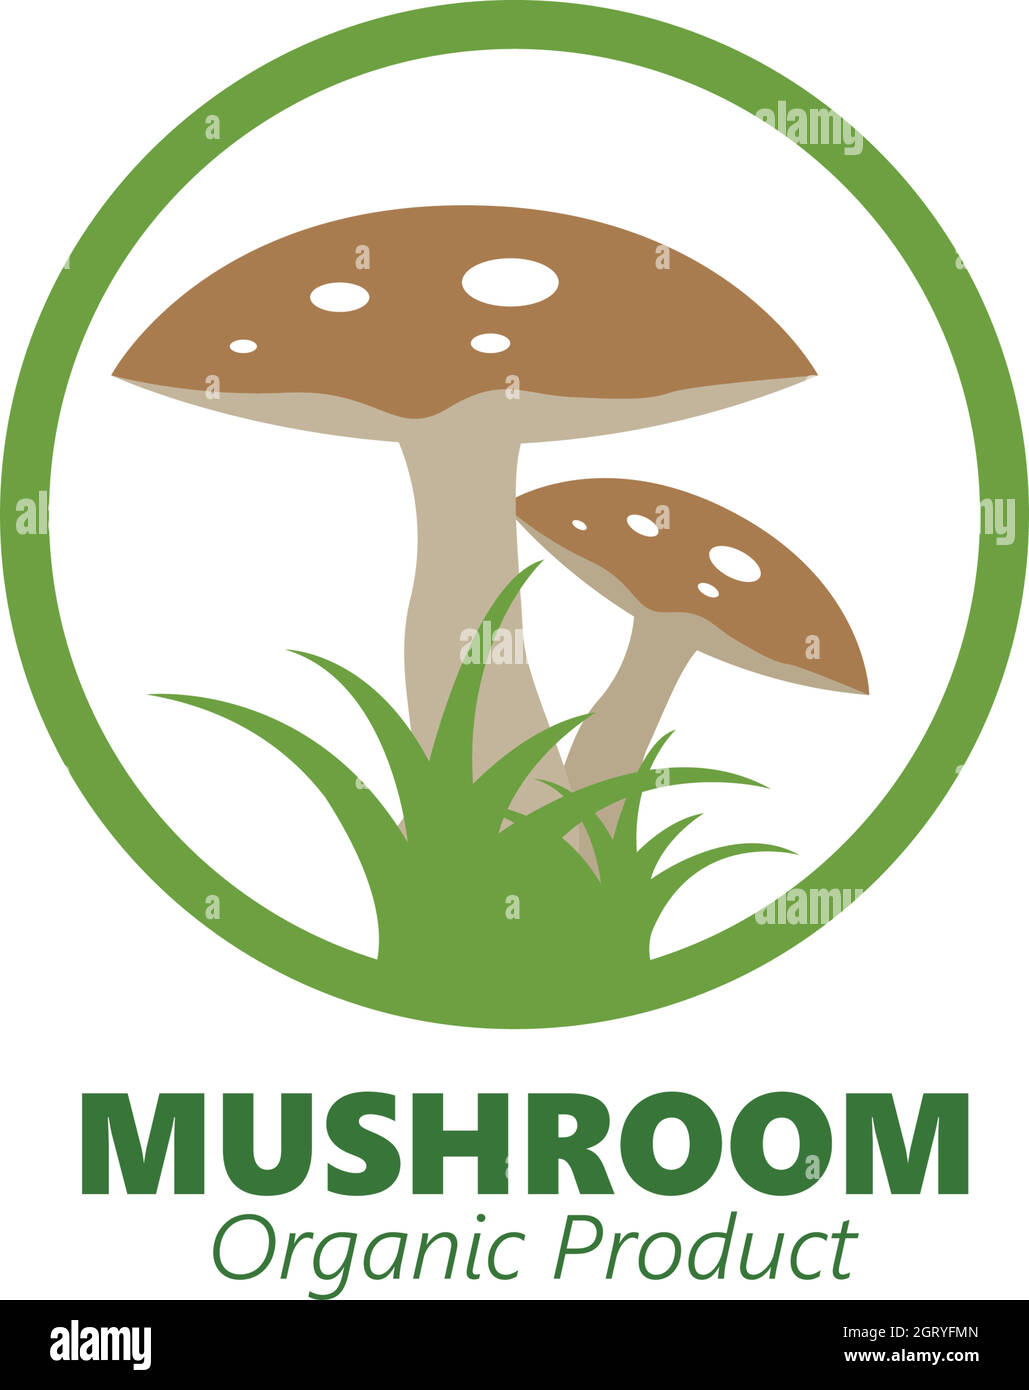 mushroom vector illustration icon design Stock Vector